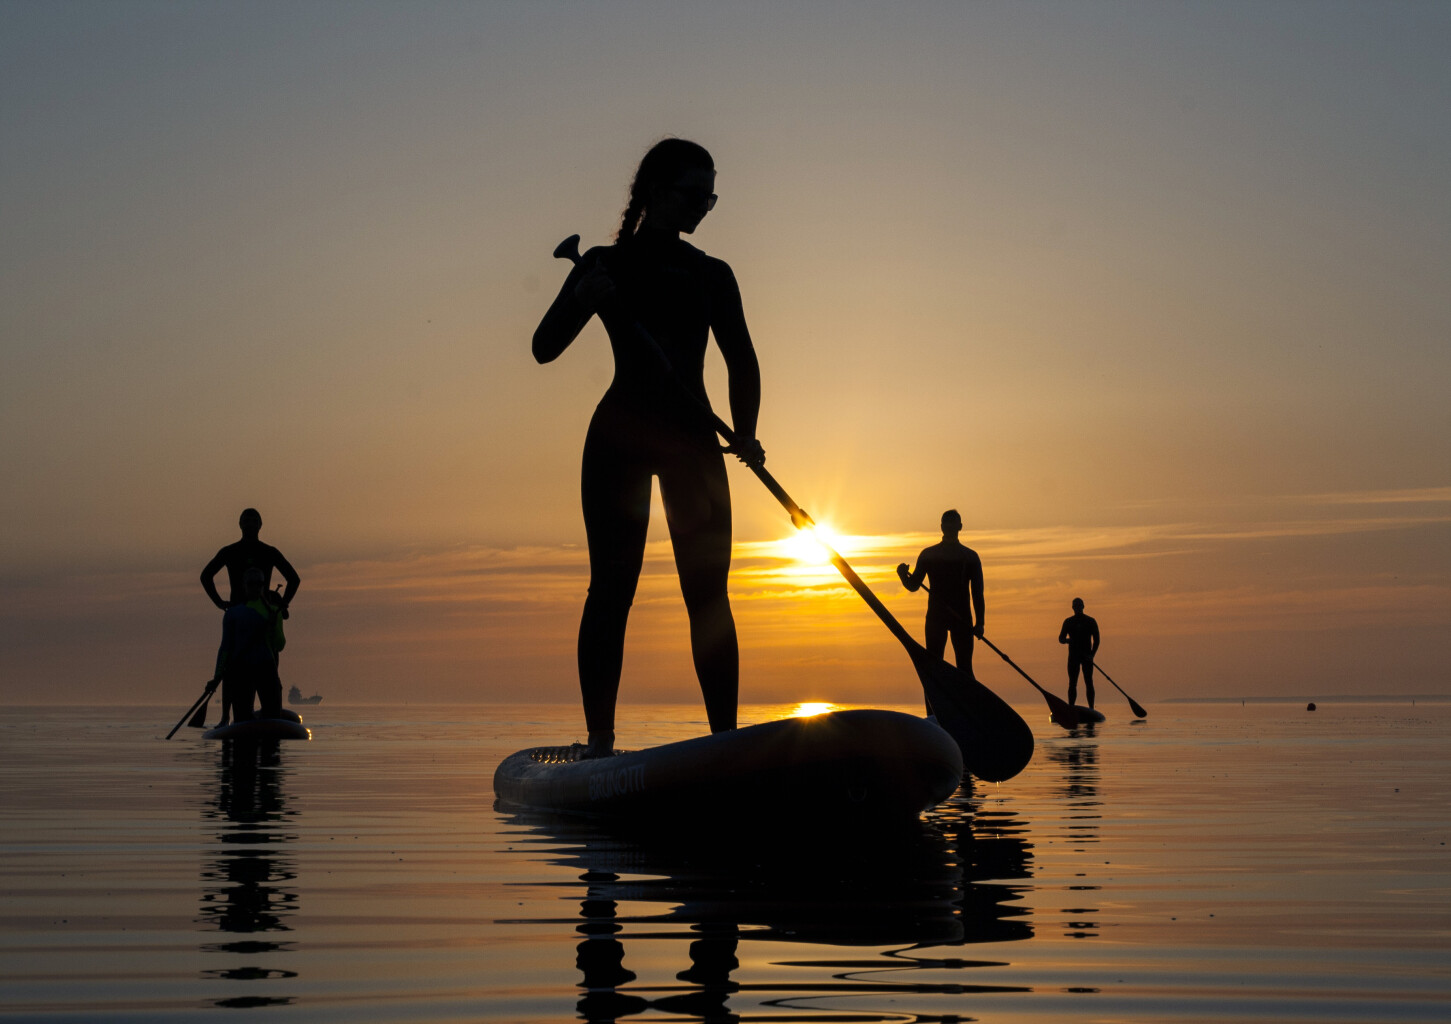 Морской поход SUP-серфингистов на закате 